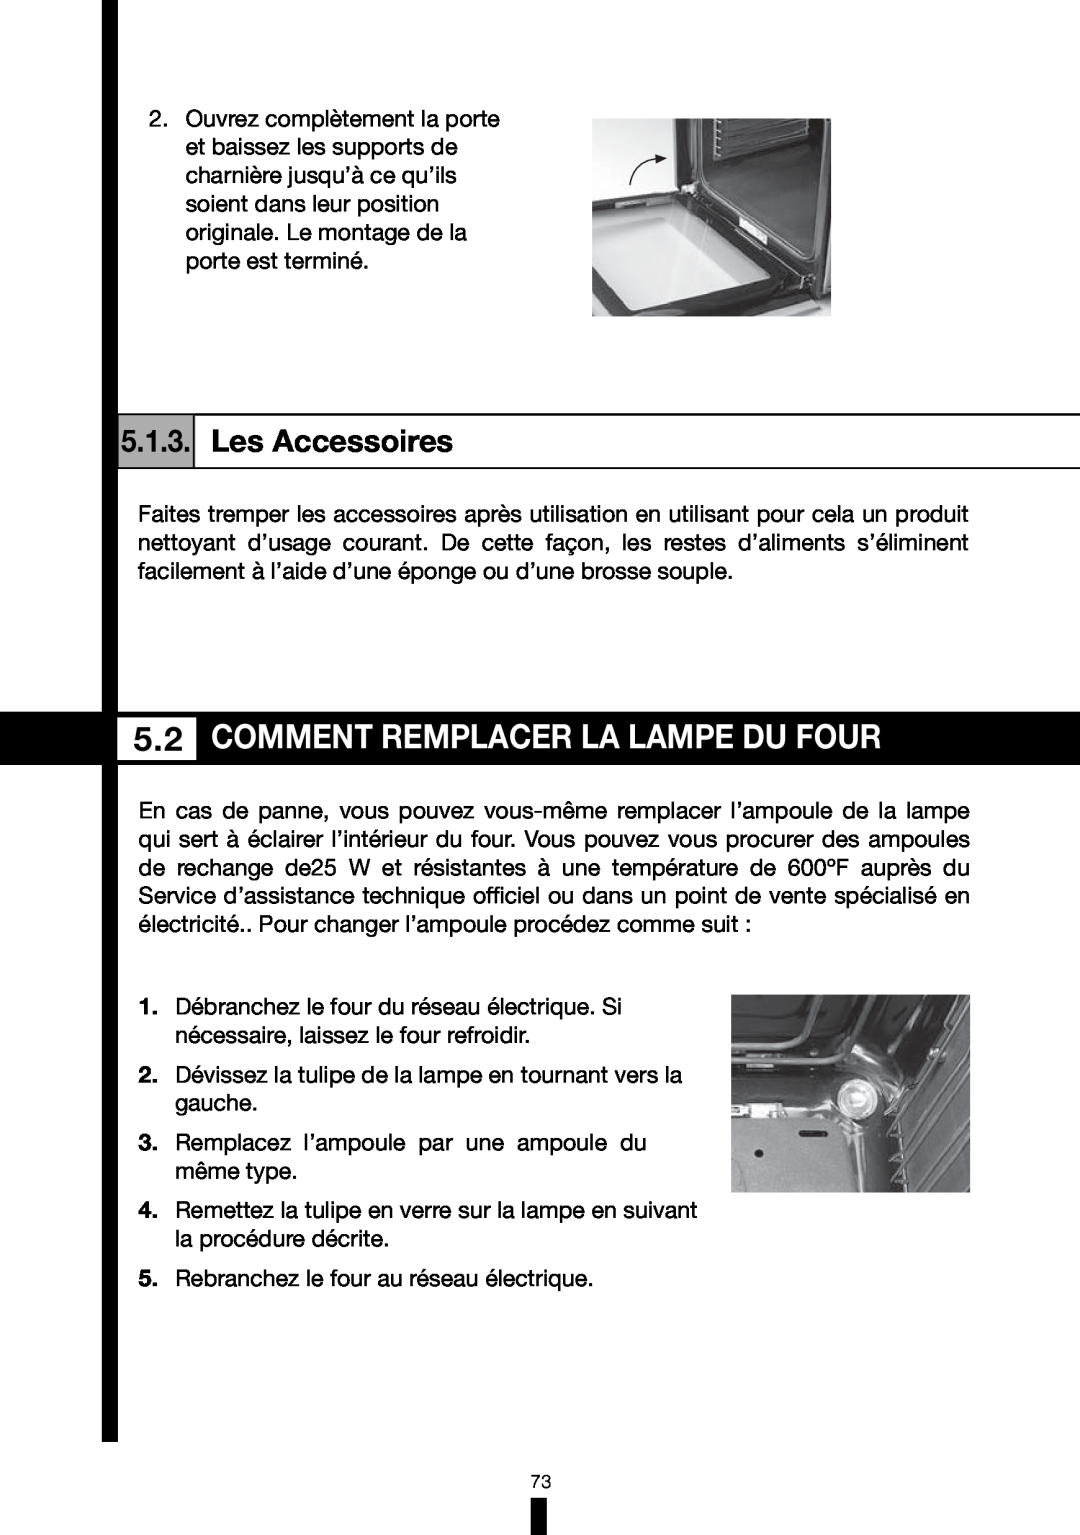 Fagor America RFA-244 DF, RFA-365 DF manual Comment Remplacer La Lampe Du Four, Les Accessoires 